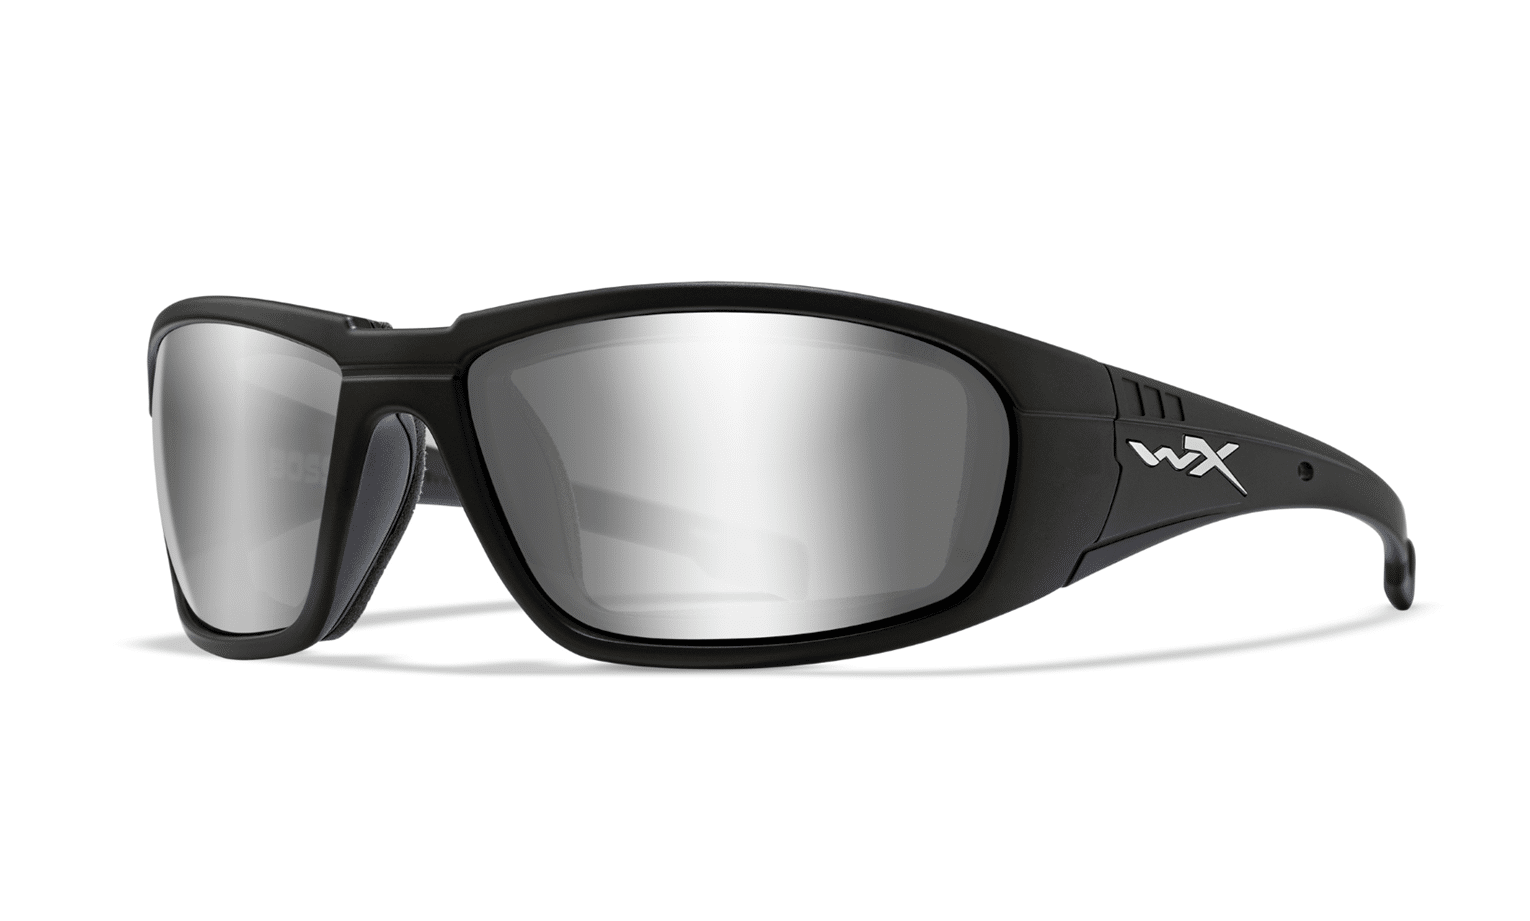 Wiley X Boss gafas de protección-vasos light adjusting Grey lens marco negro mate 